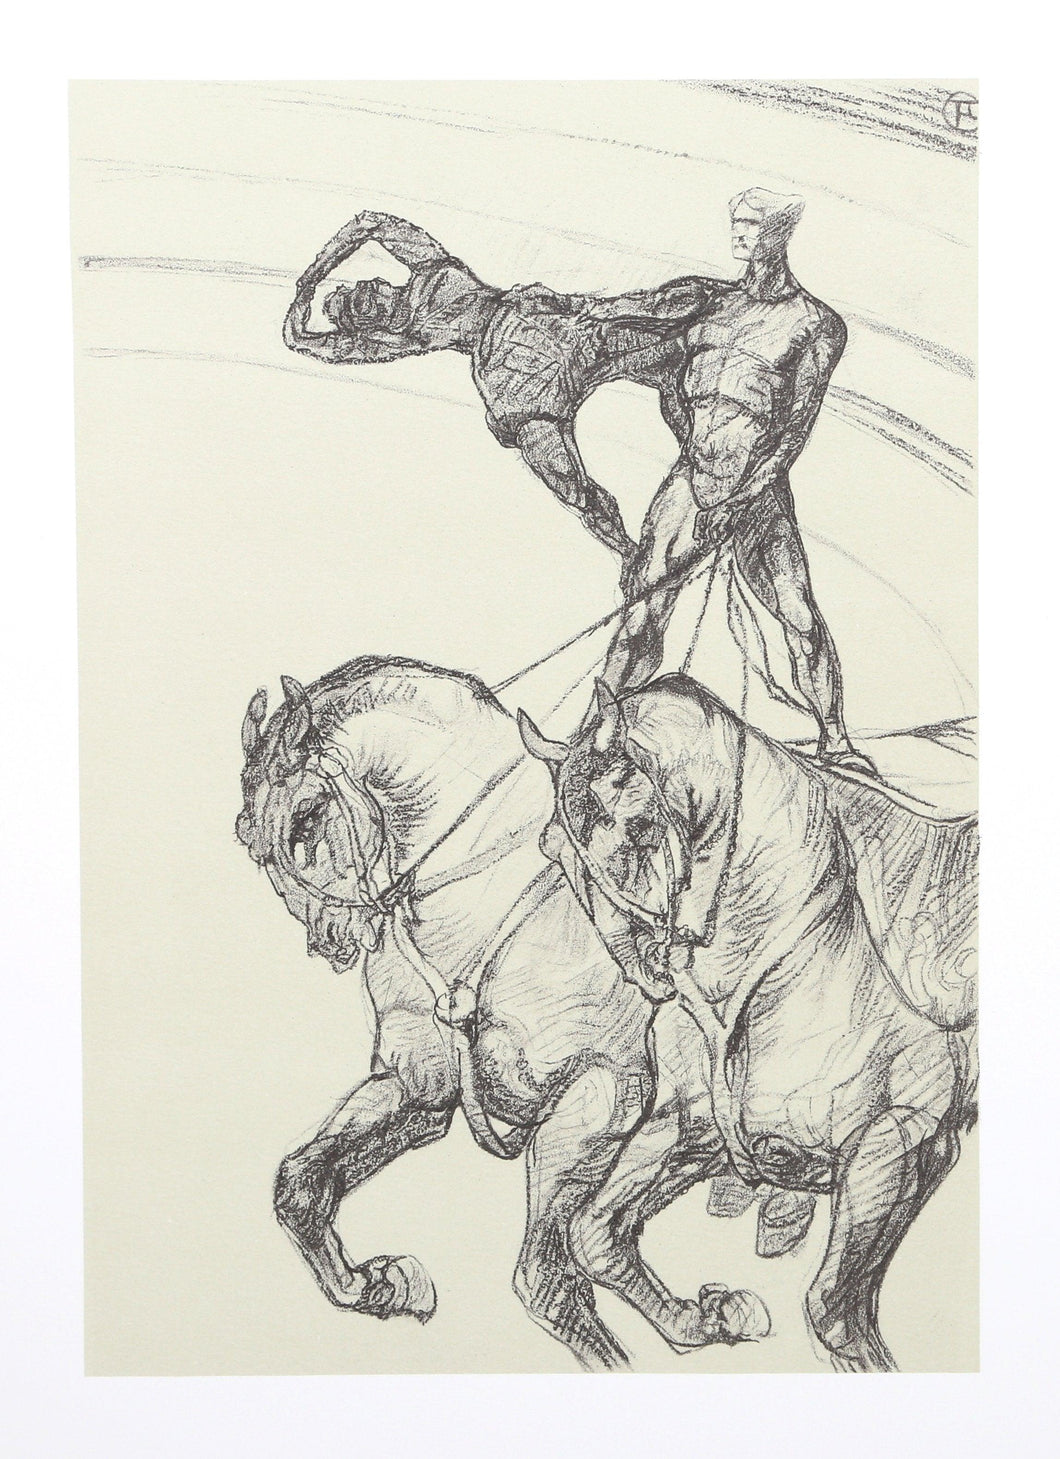 The Circus Portfolio 14 Lithograph | Henri de Toulouse-Lautrec,{{product.type}}